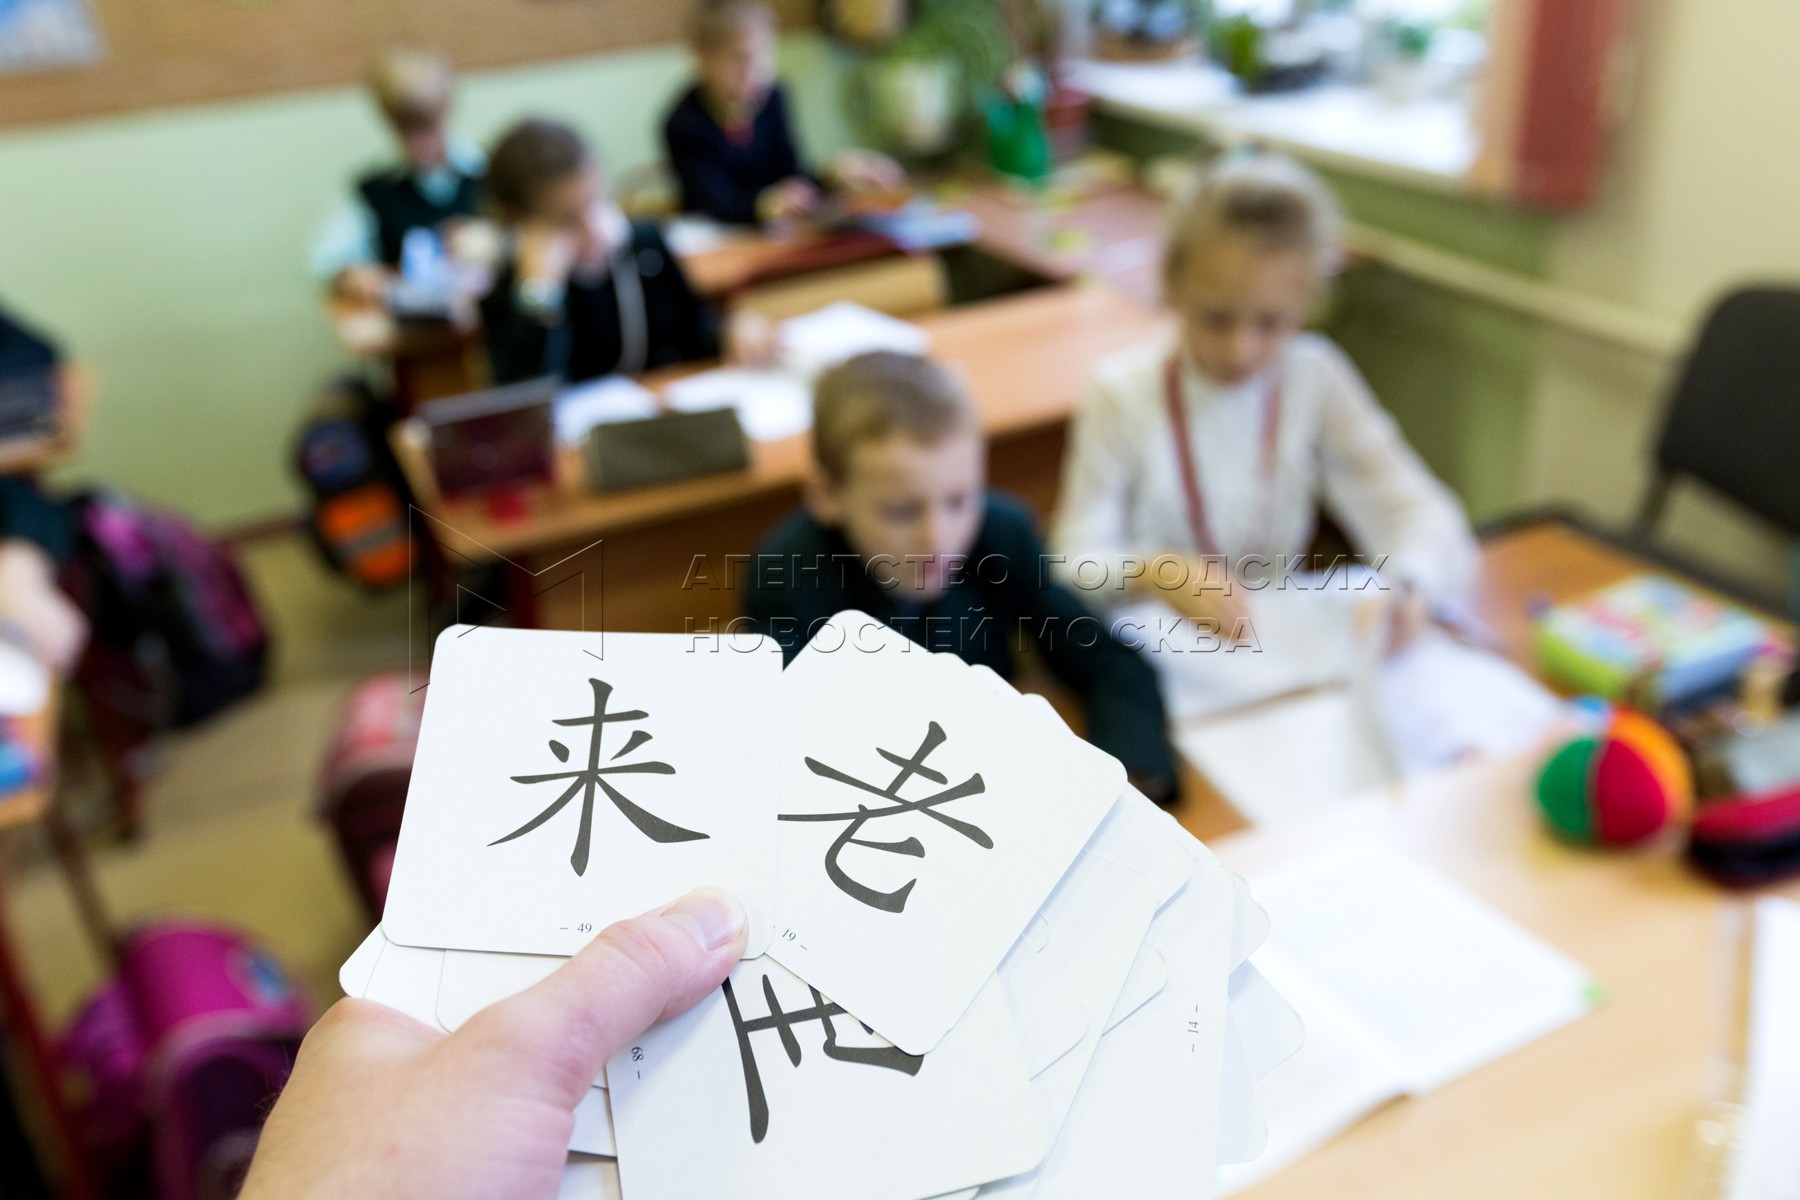 В школе китайский изучает 60 учащихся. Урок китайского языка в школе. Уроки по китайскому языку. Школьники изучают китайский язык. Китайский язык в российских школах.